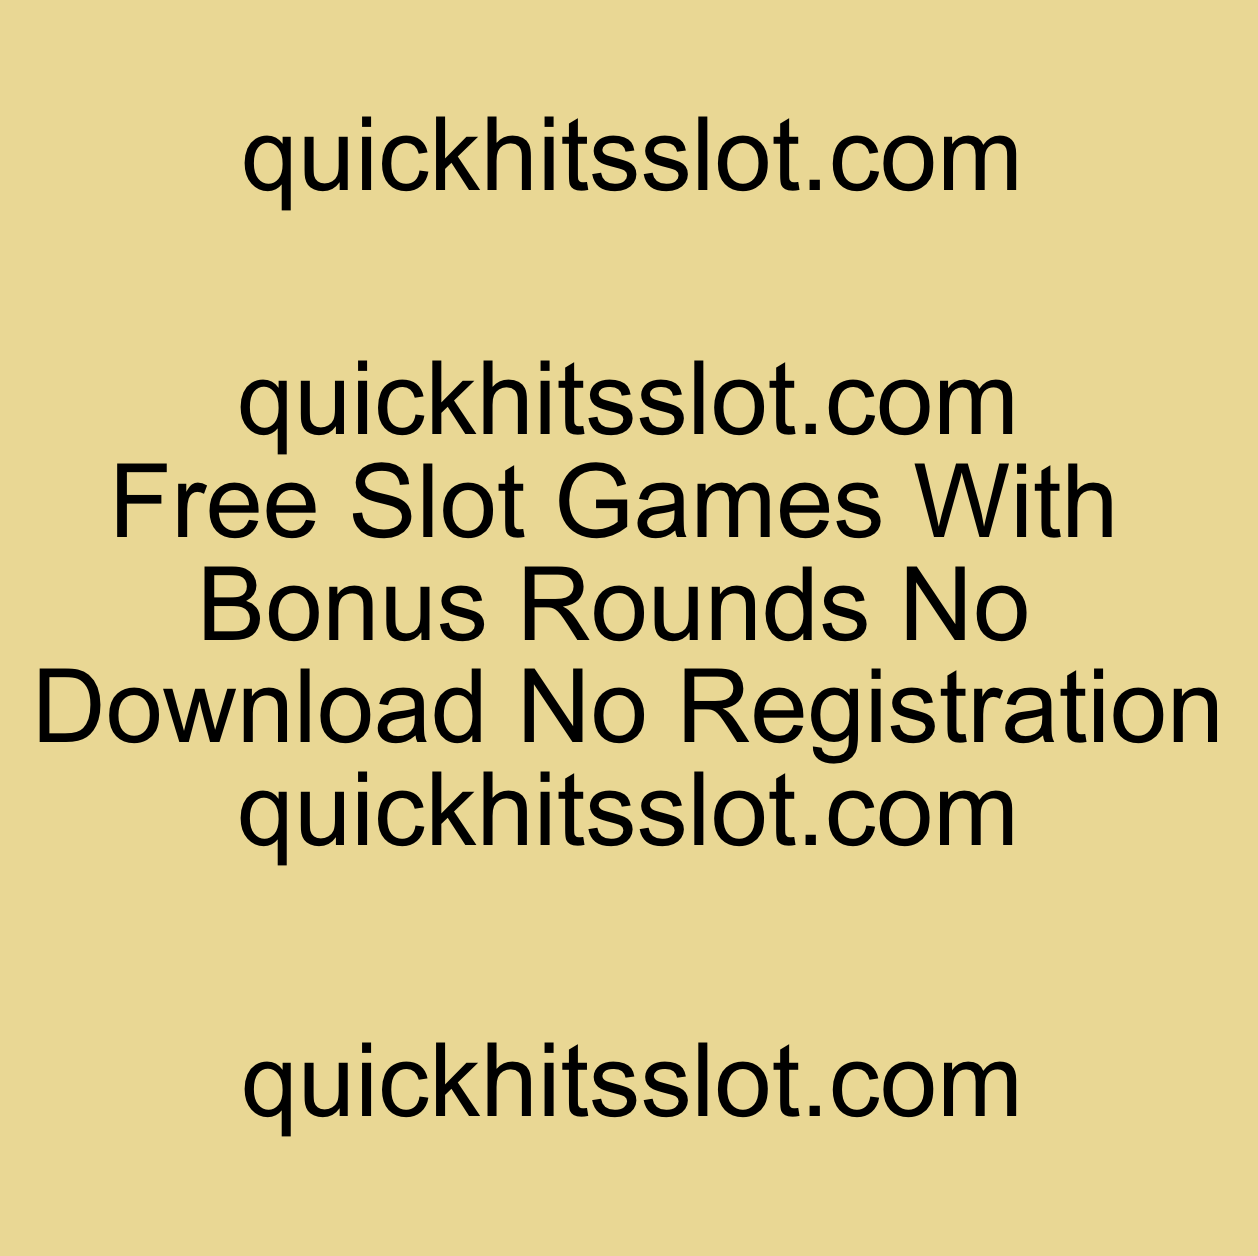 Free Slot Games With Bonus Rounds No Download No Registration quickhitsslot.com